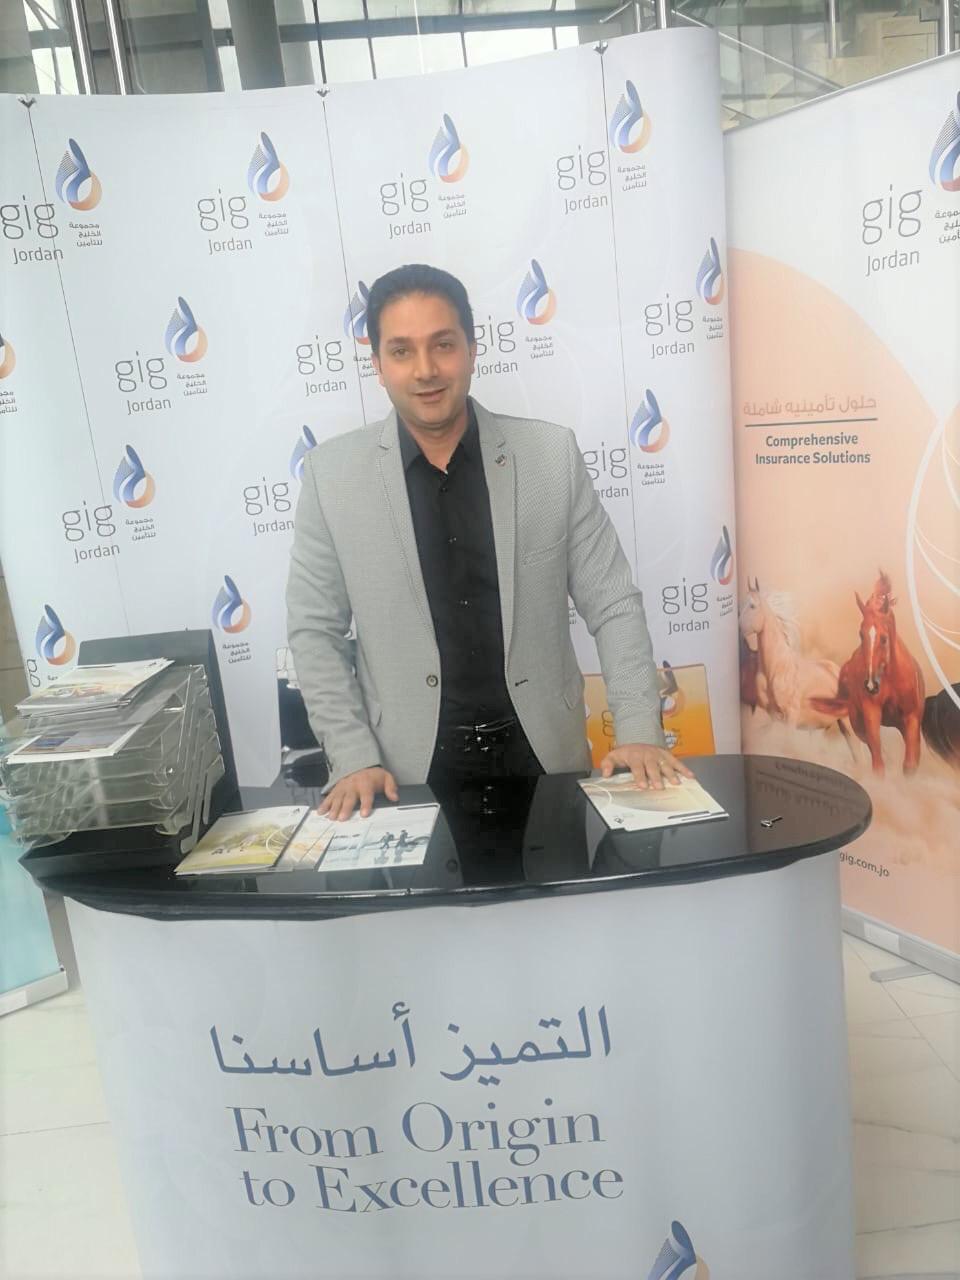 شركة gig-Jordan تشارك في المؤتمر الإقليمي الثالث لصحة اليافعين - صور